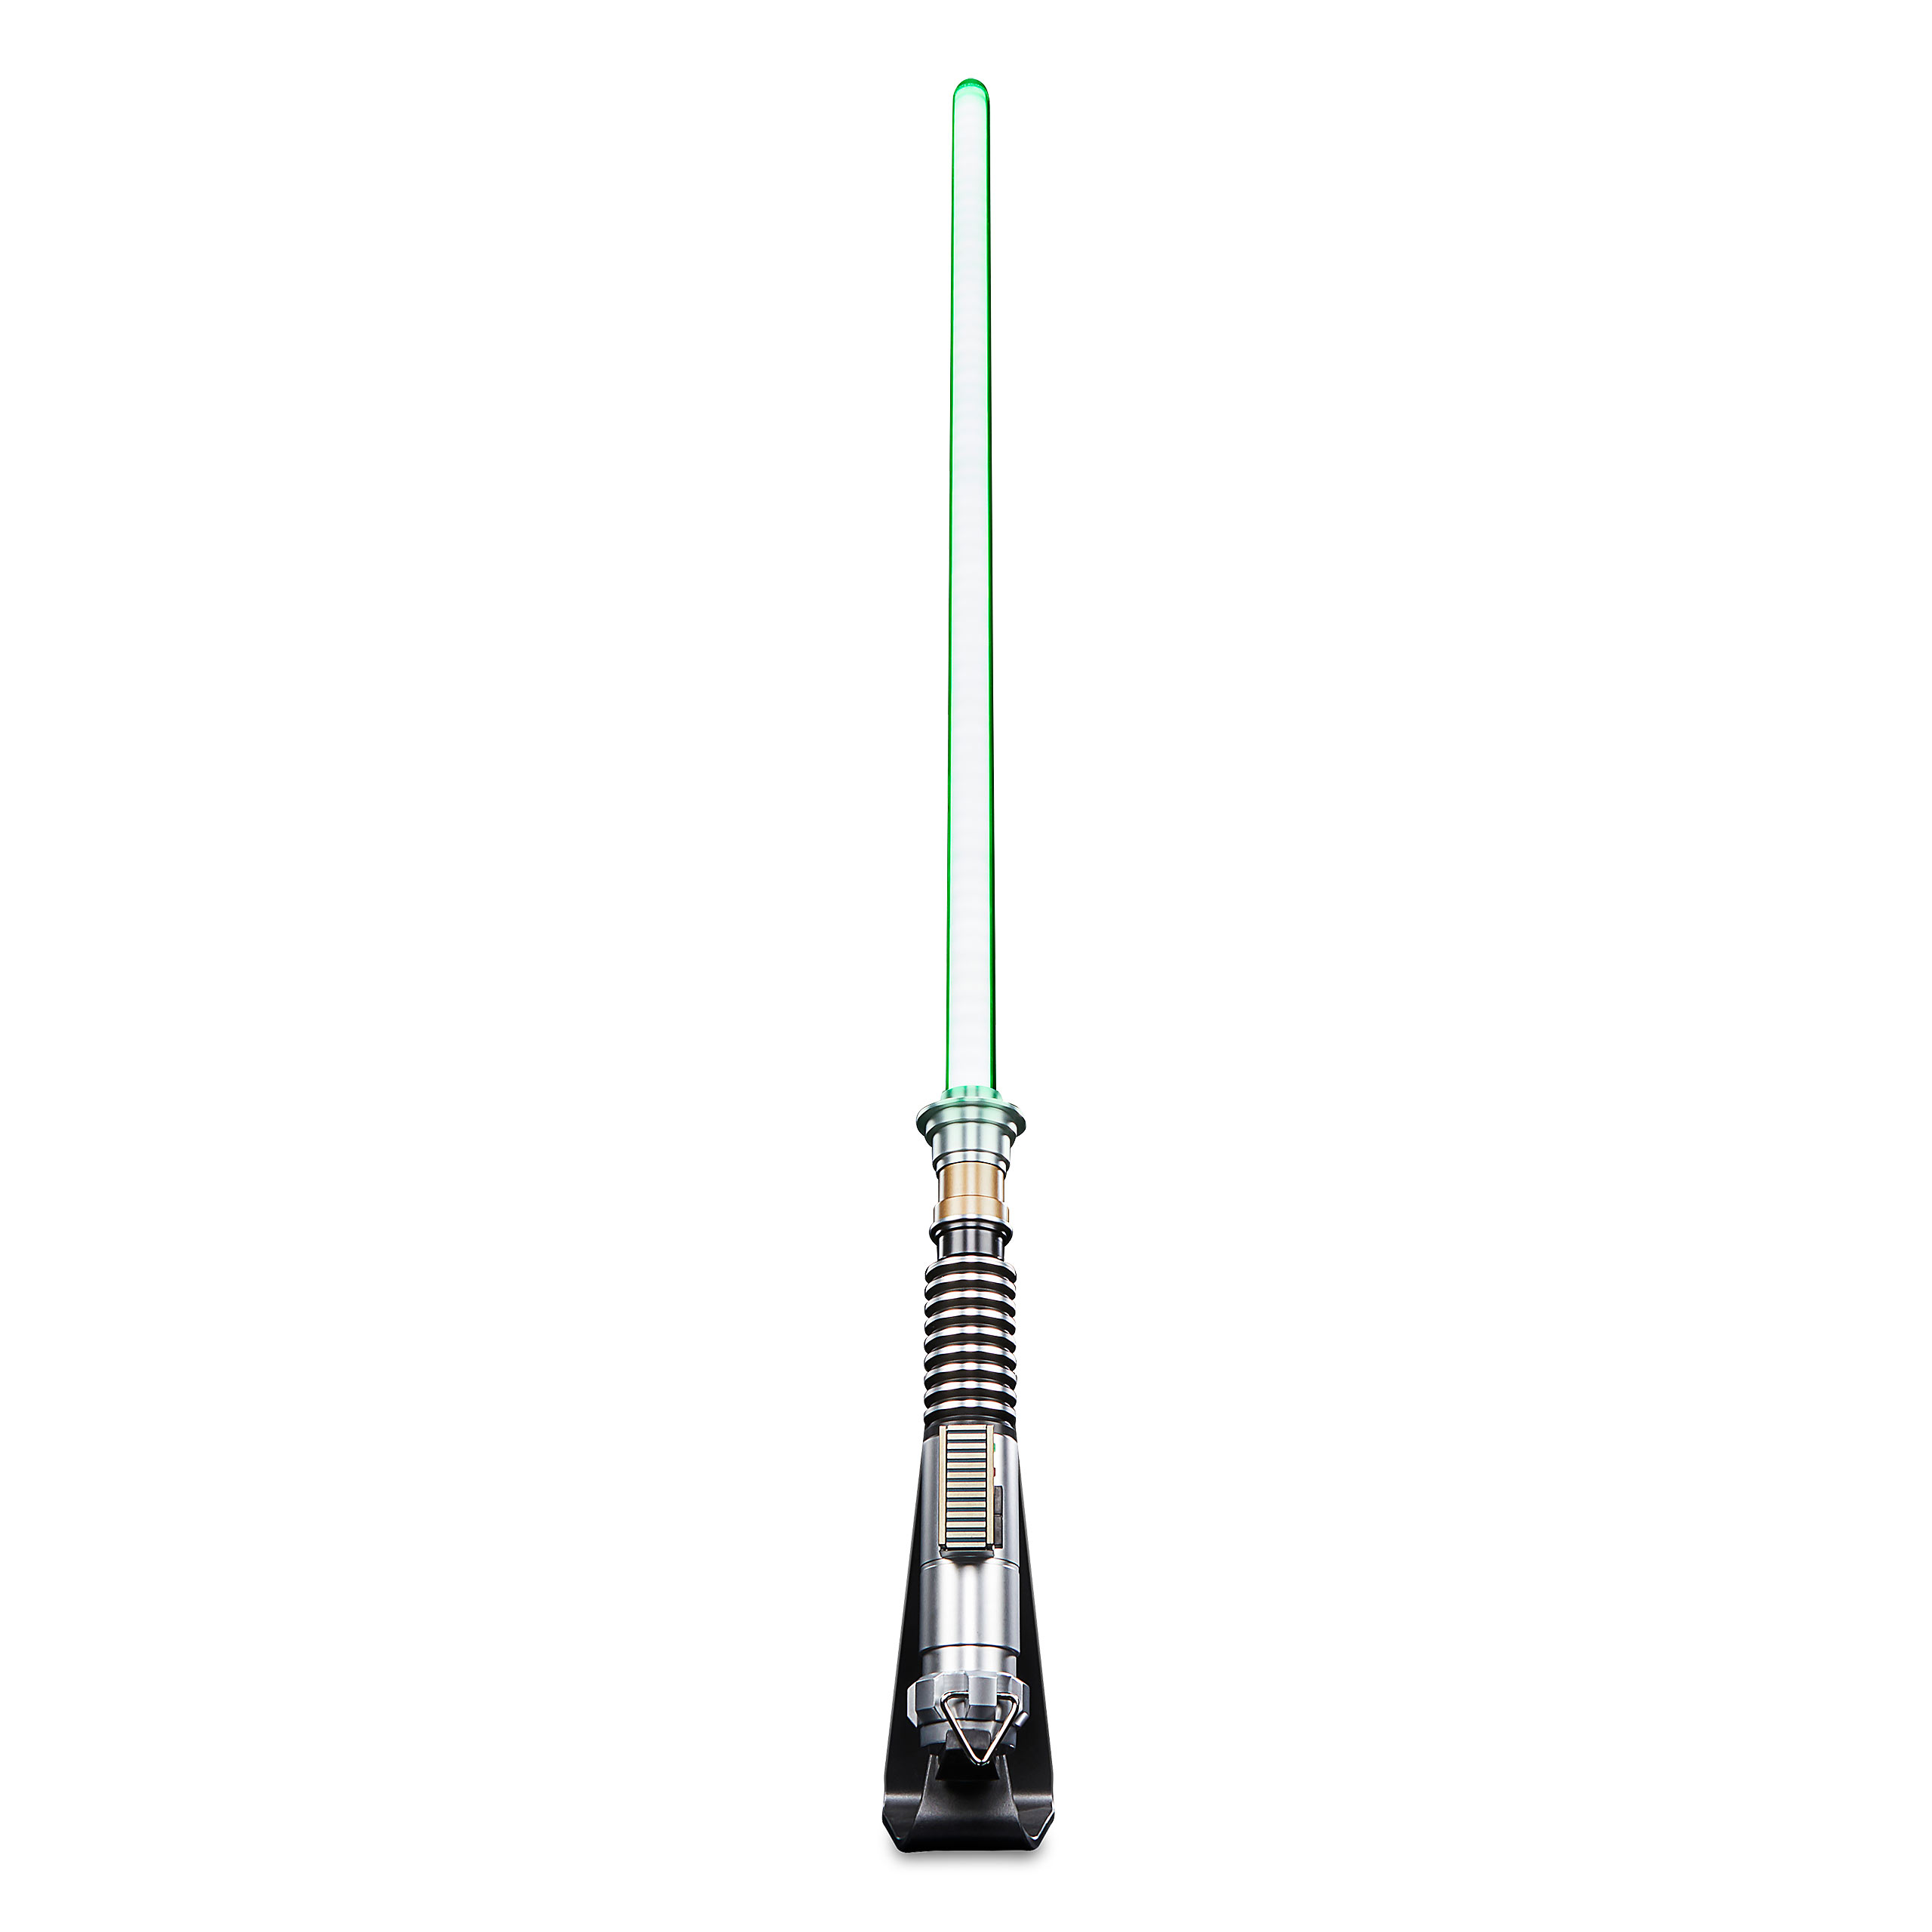 Star Wars - Luke Skywalker Force FX Elite Sabre Laser